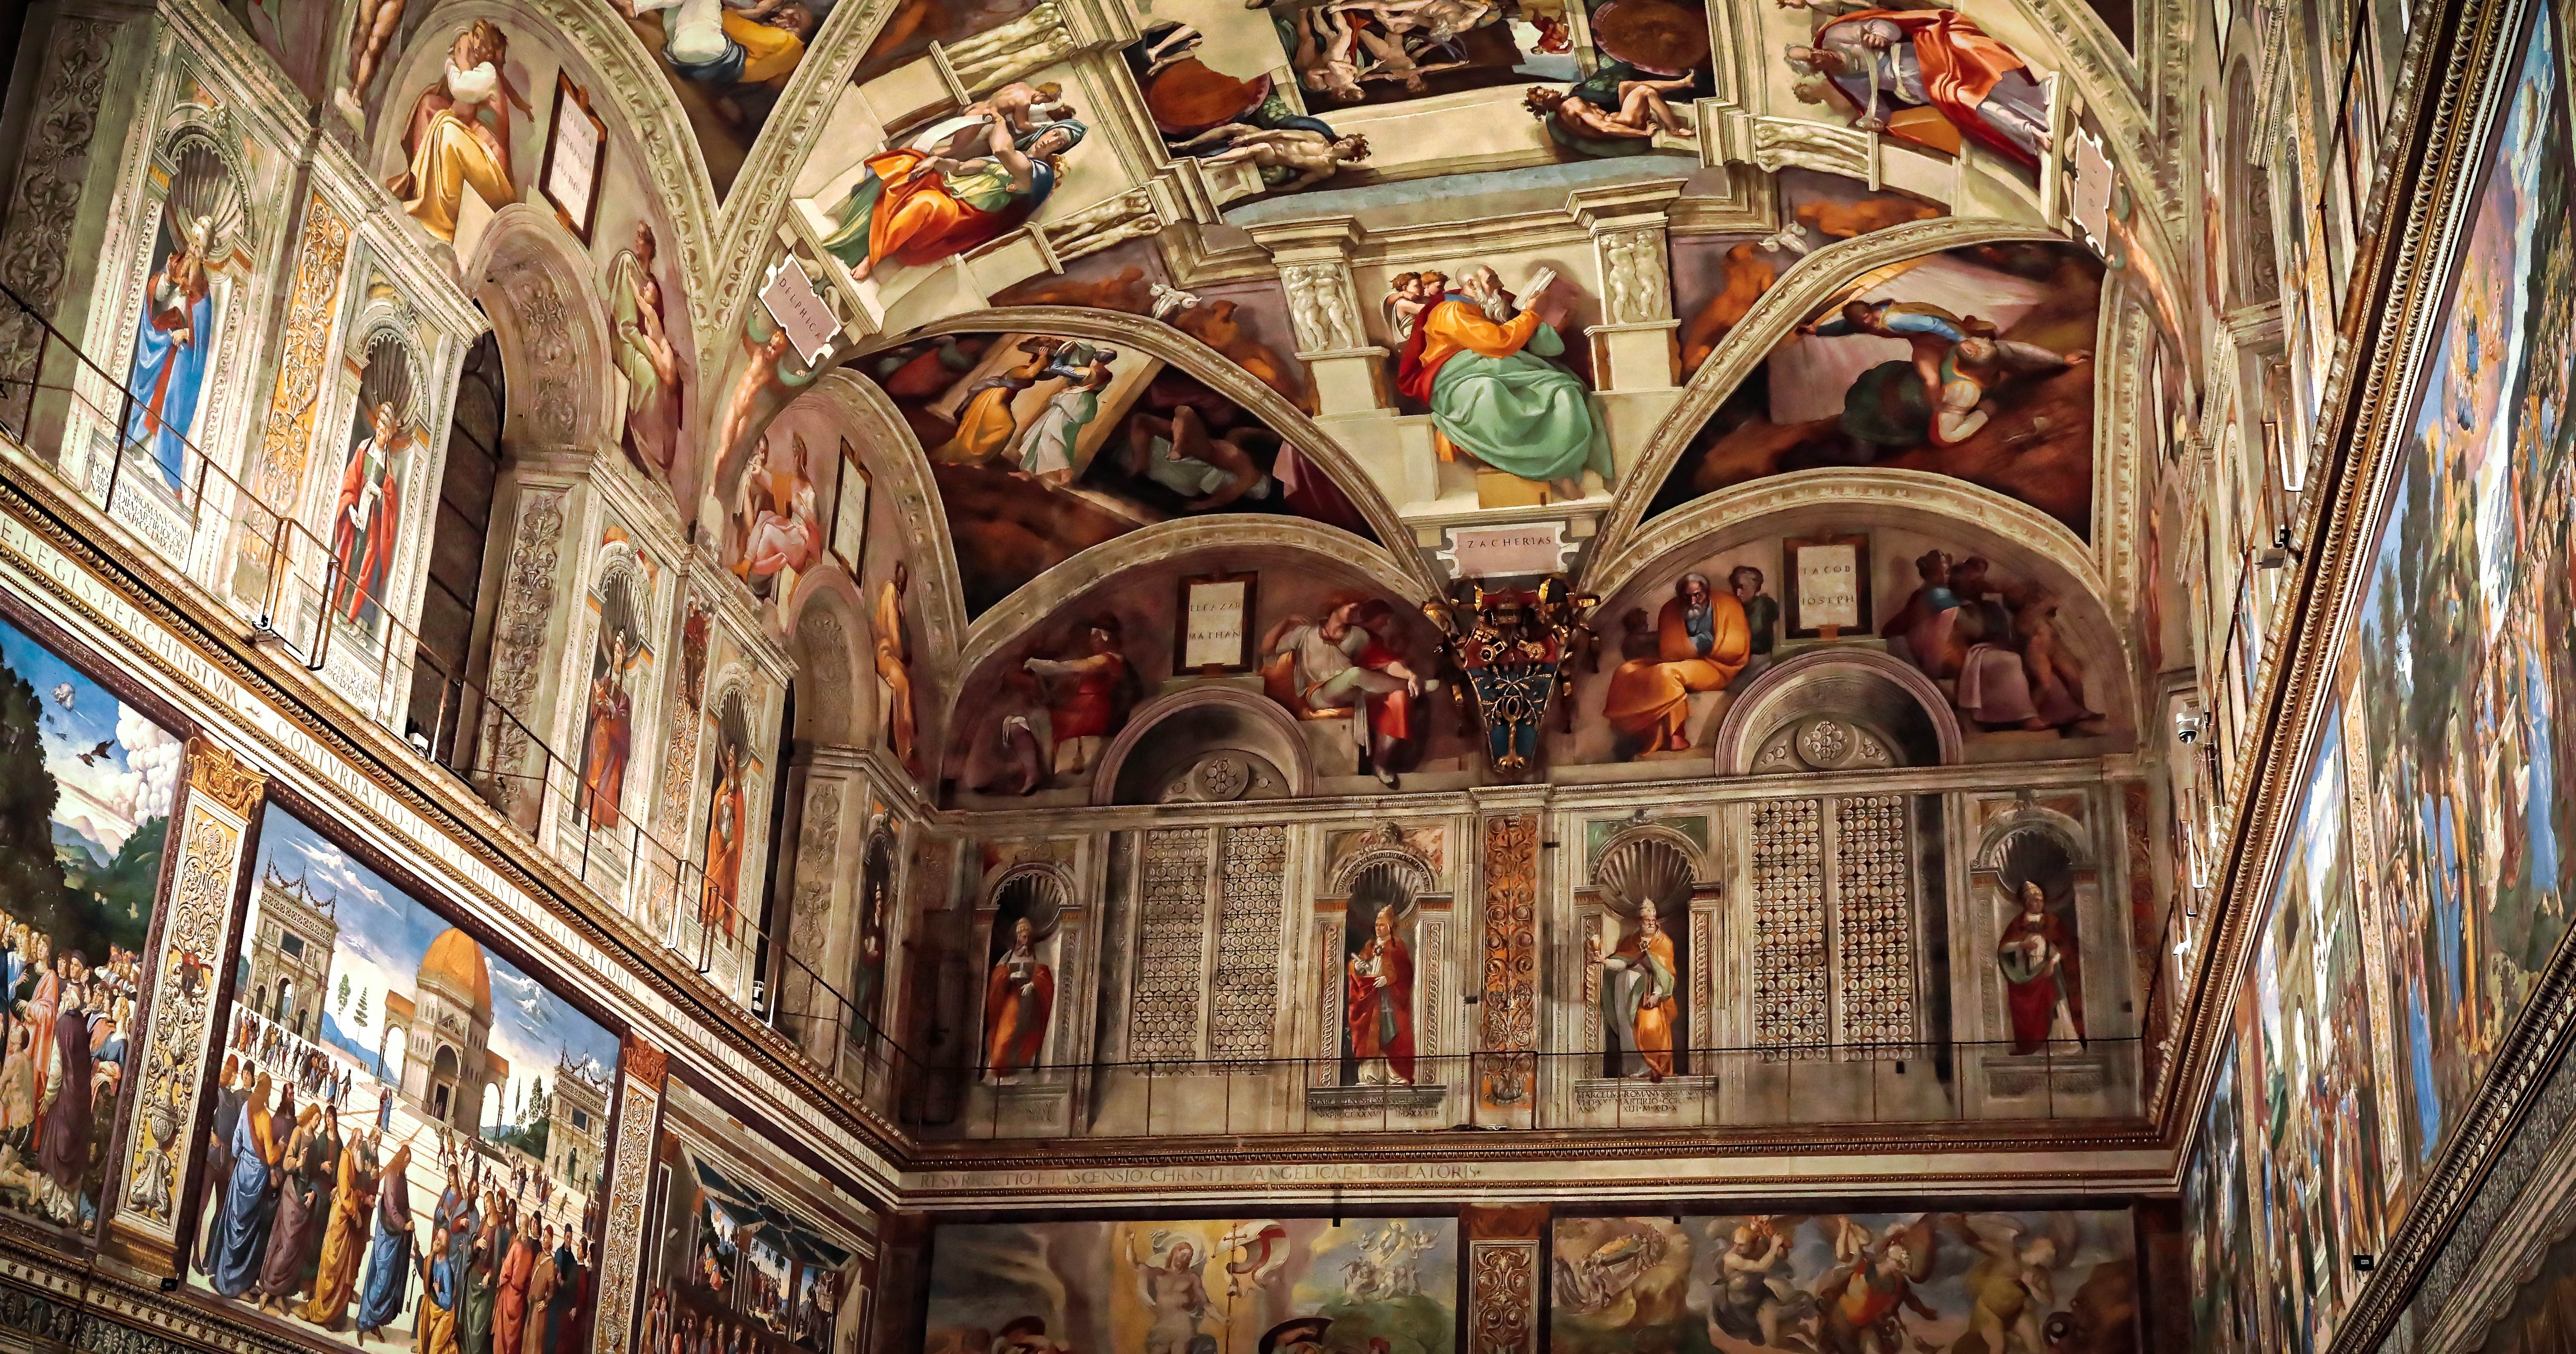 Sistine Ceiling between 1508-1512 by Michelangelo. Fresco, Sistine Chapel, Vatican. 